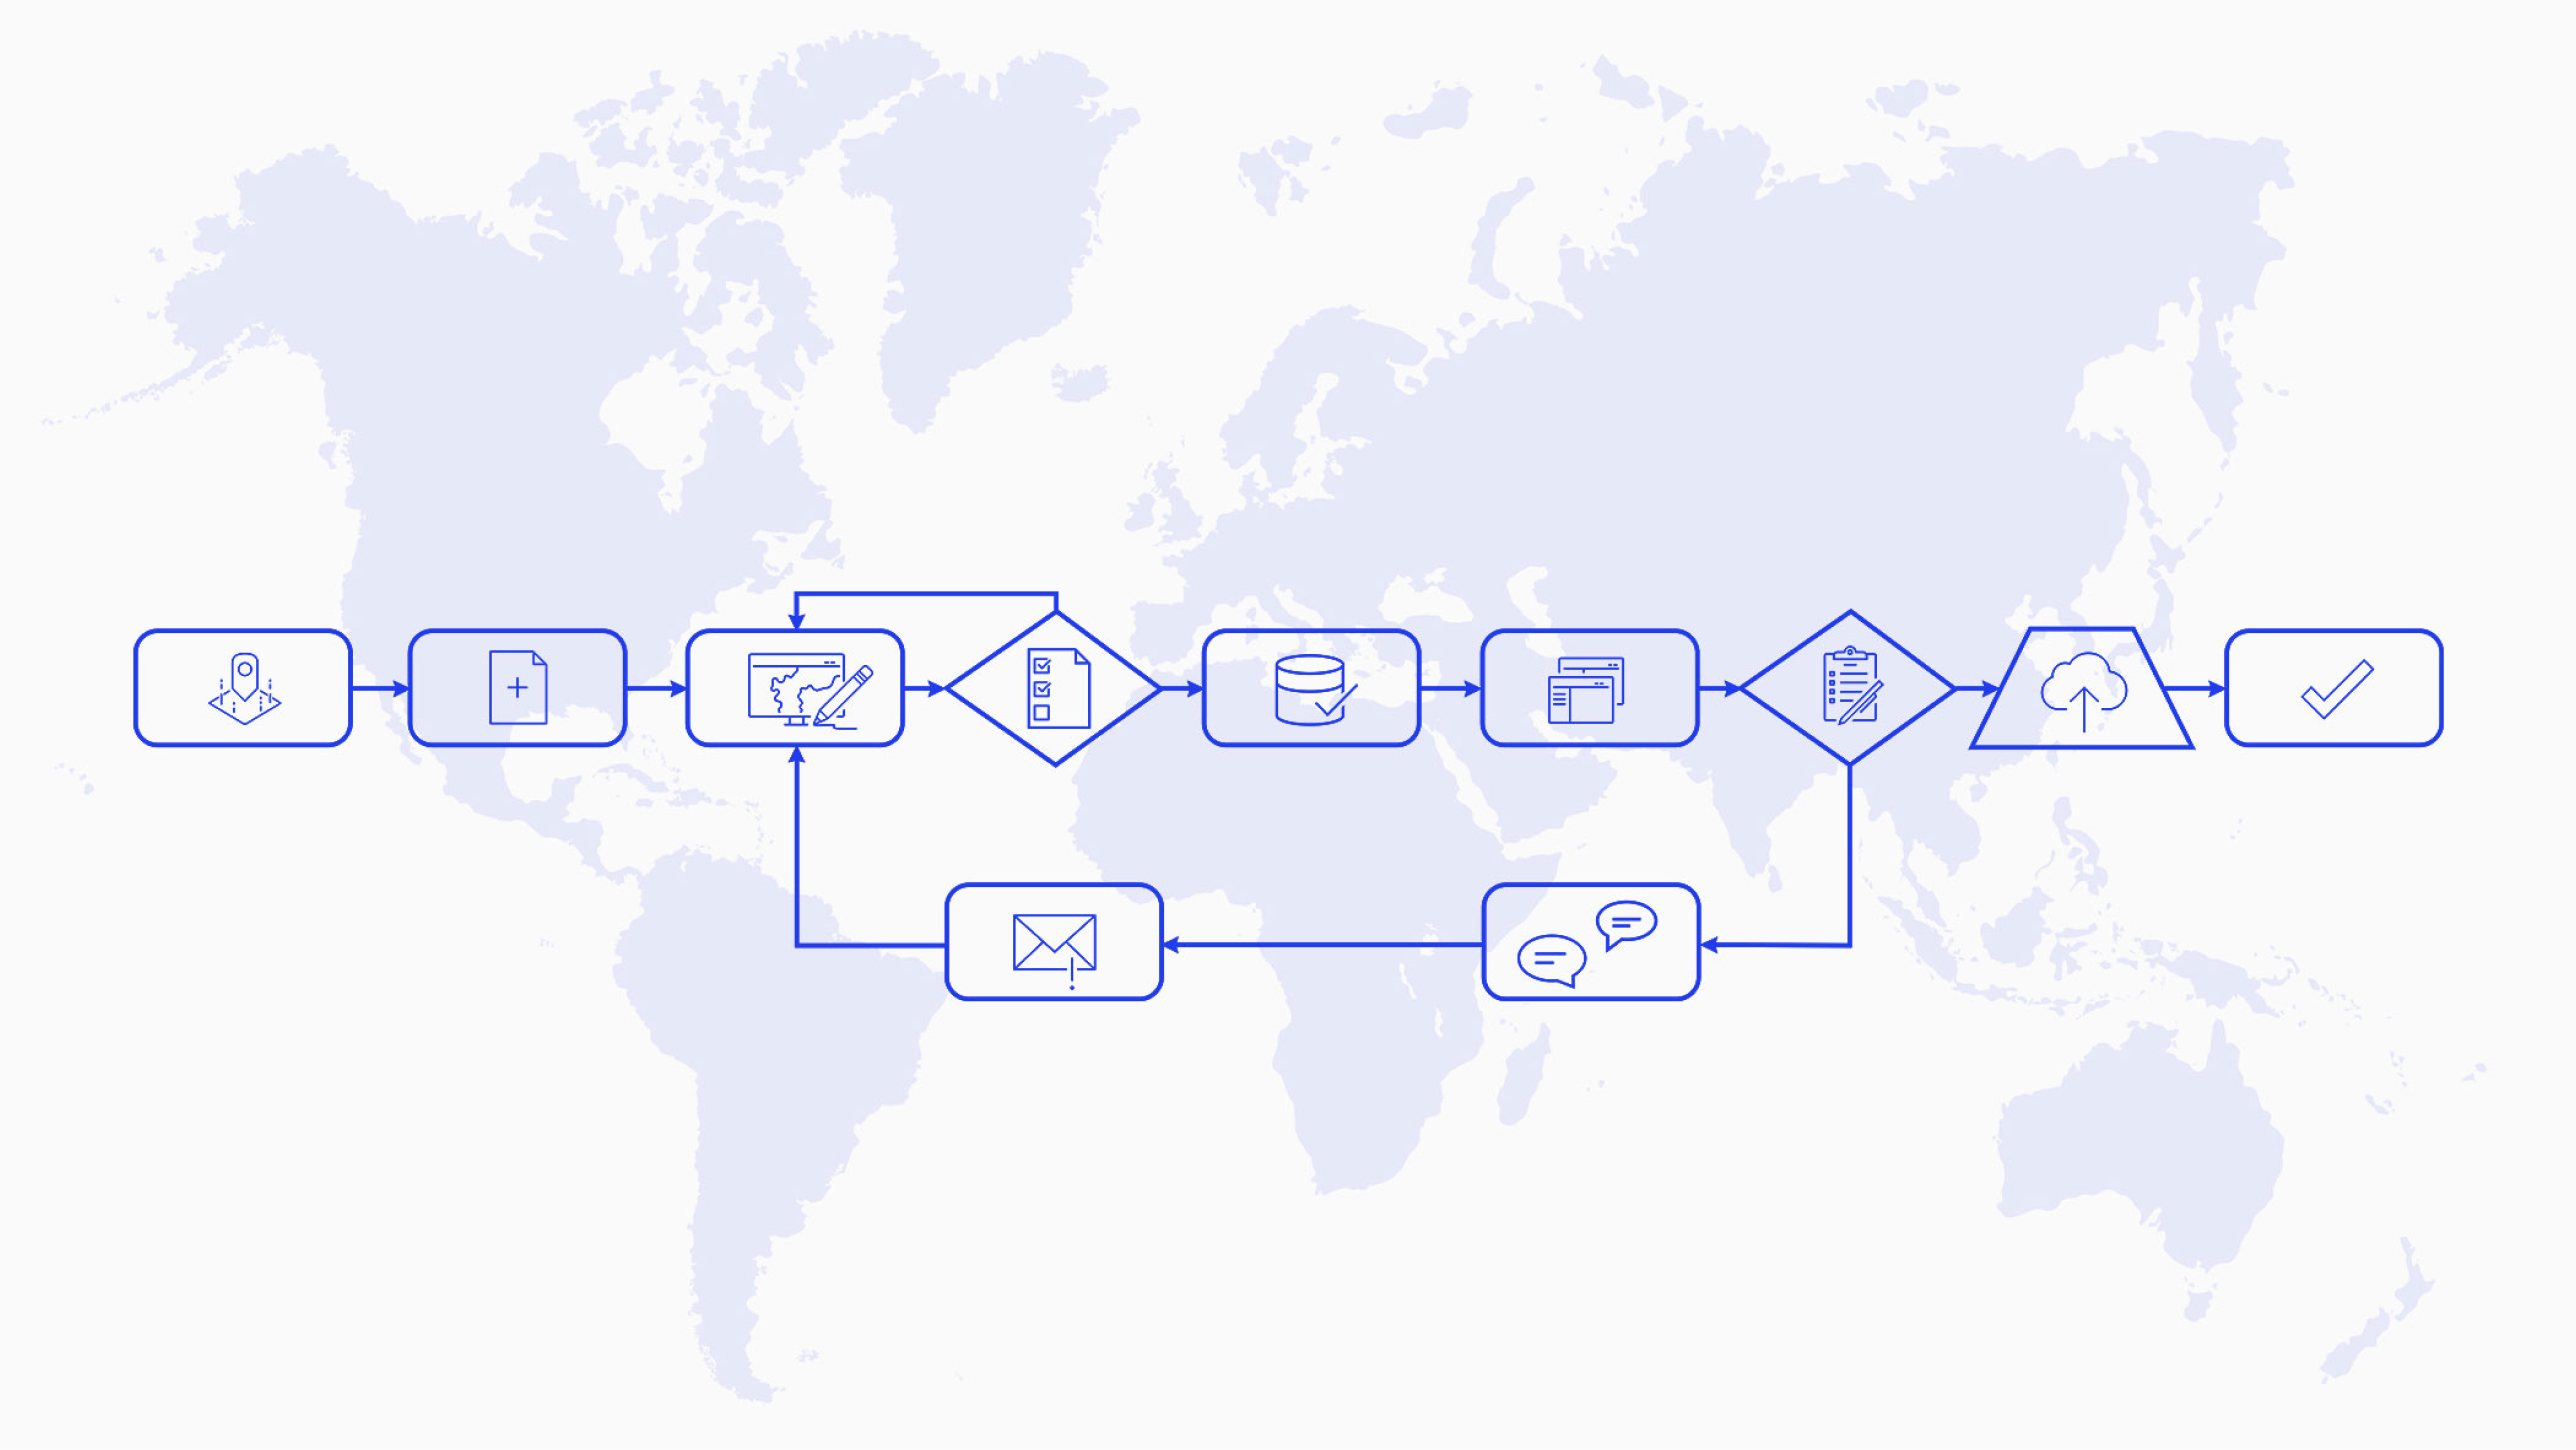 Иллюстрация блок-схемы с фигурами, соединенными стрелками, на фоне фиолетовой карты мира